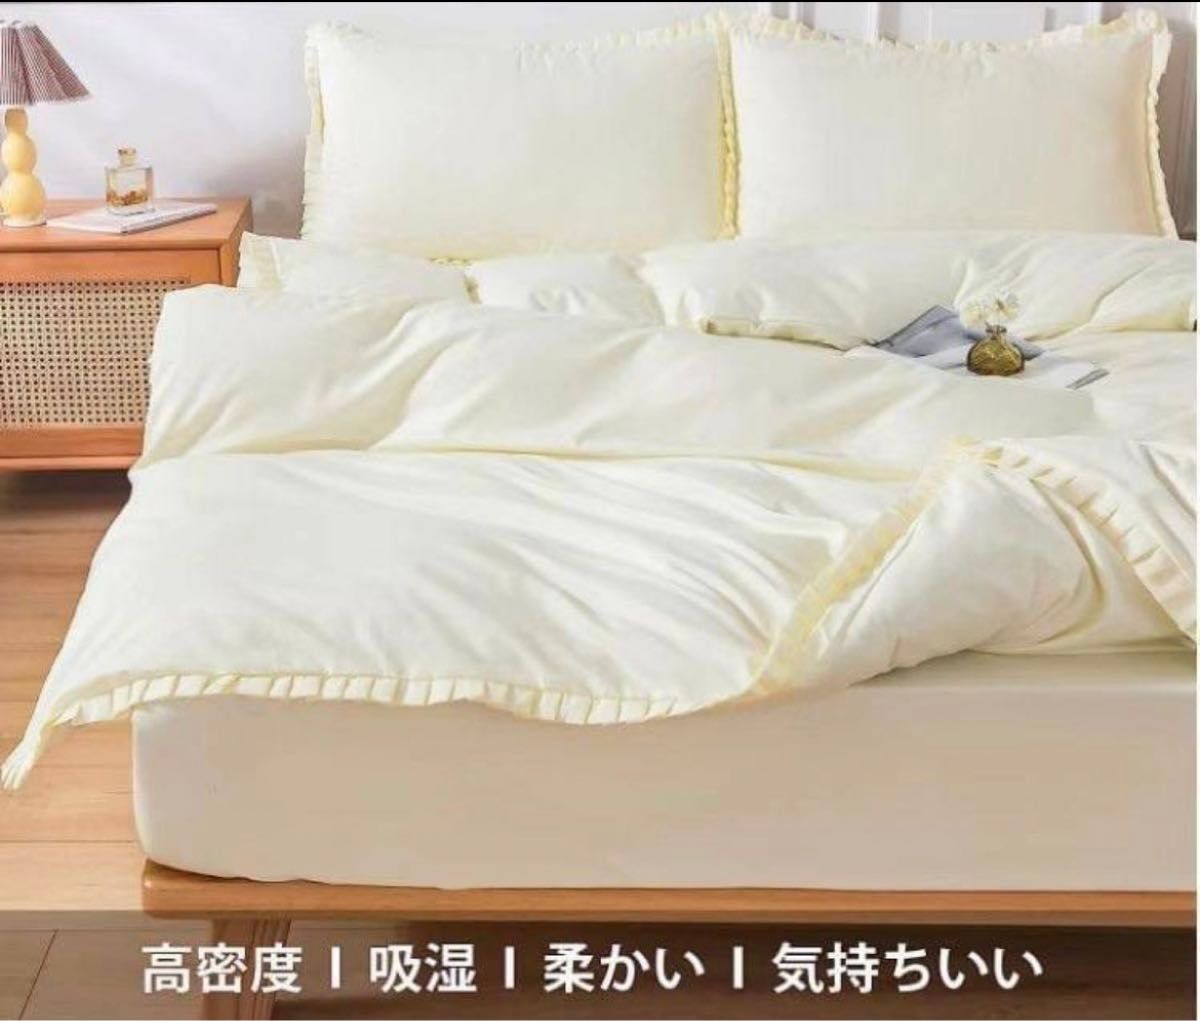 布団カバー シングル 掛け布団カバー 洋式和式兼用 肌触りの良い 寝具カバー ポリエステル ふりふり アイボリー無地 かわいい